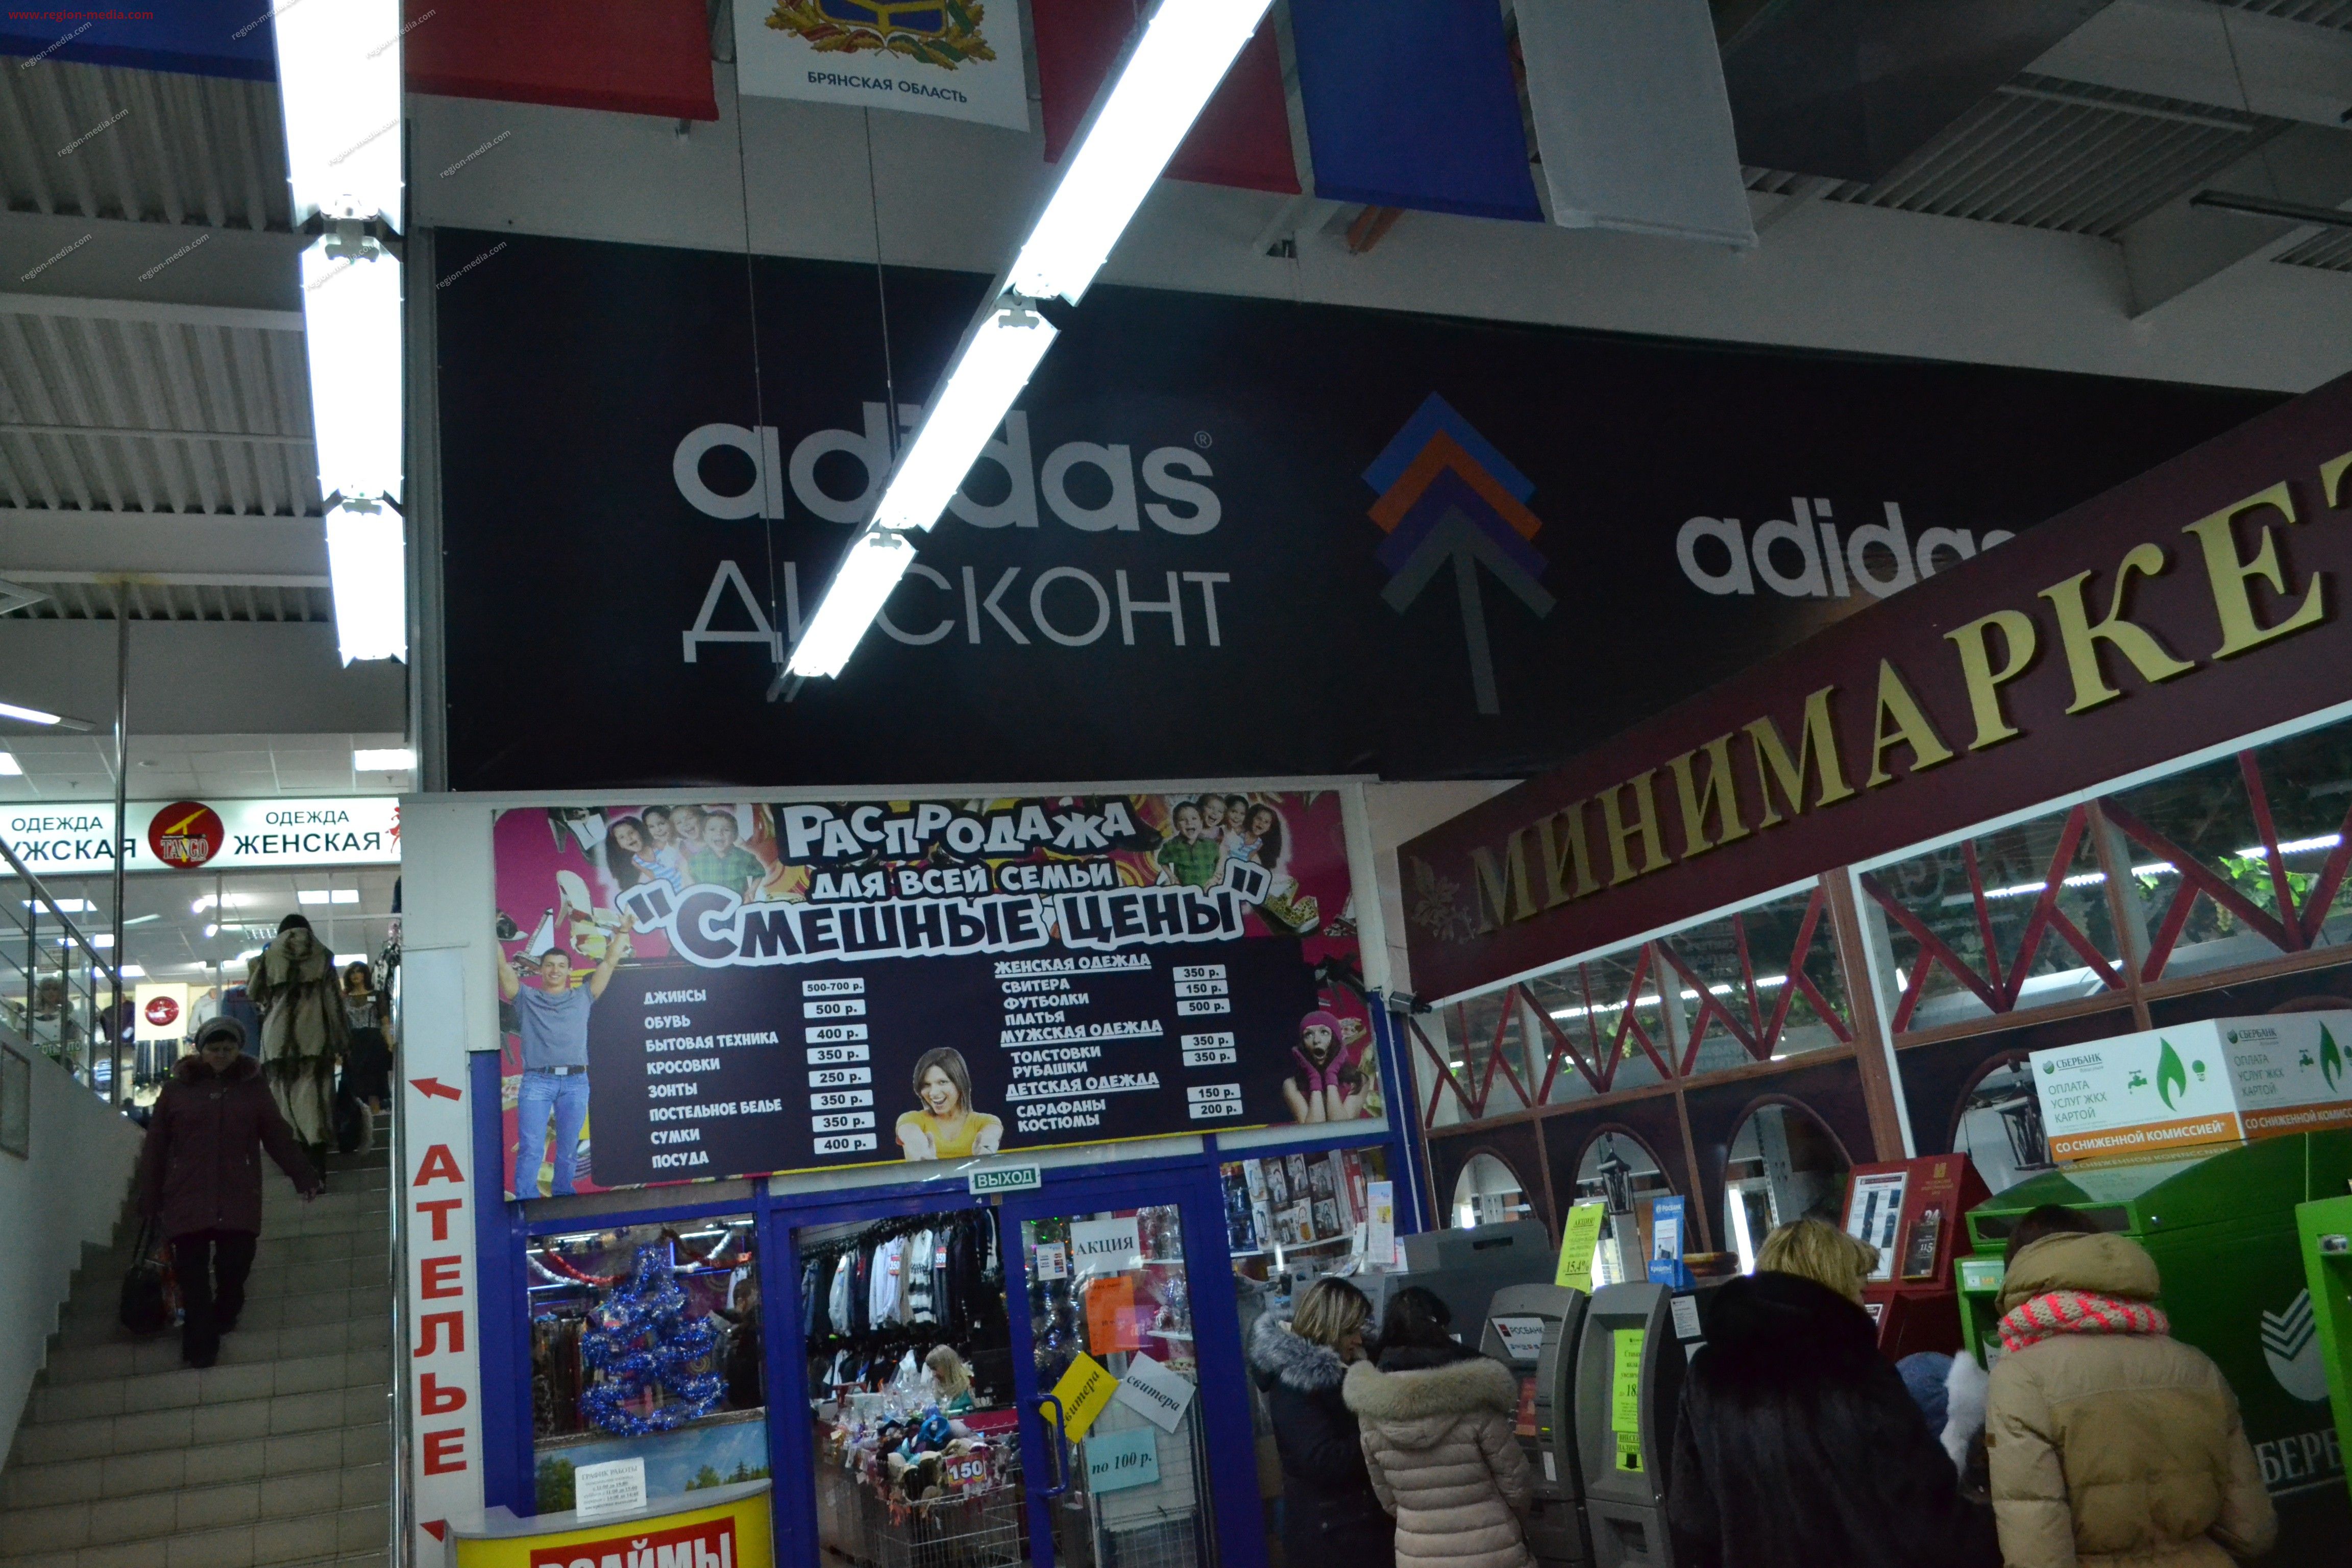 Размещение рекламы компании "Adidas" на перетяжках в городе Губкин